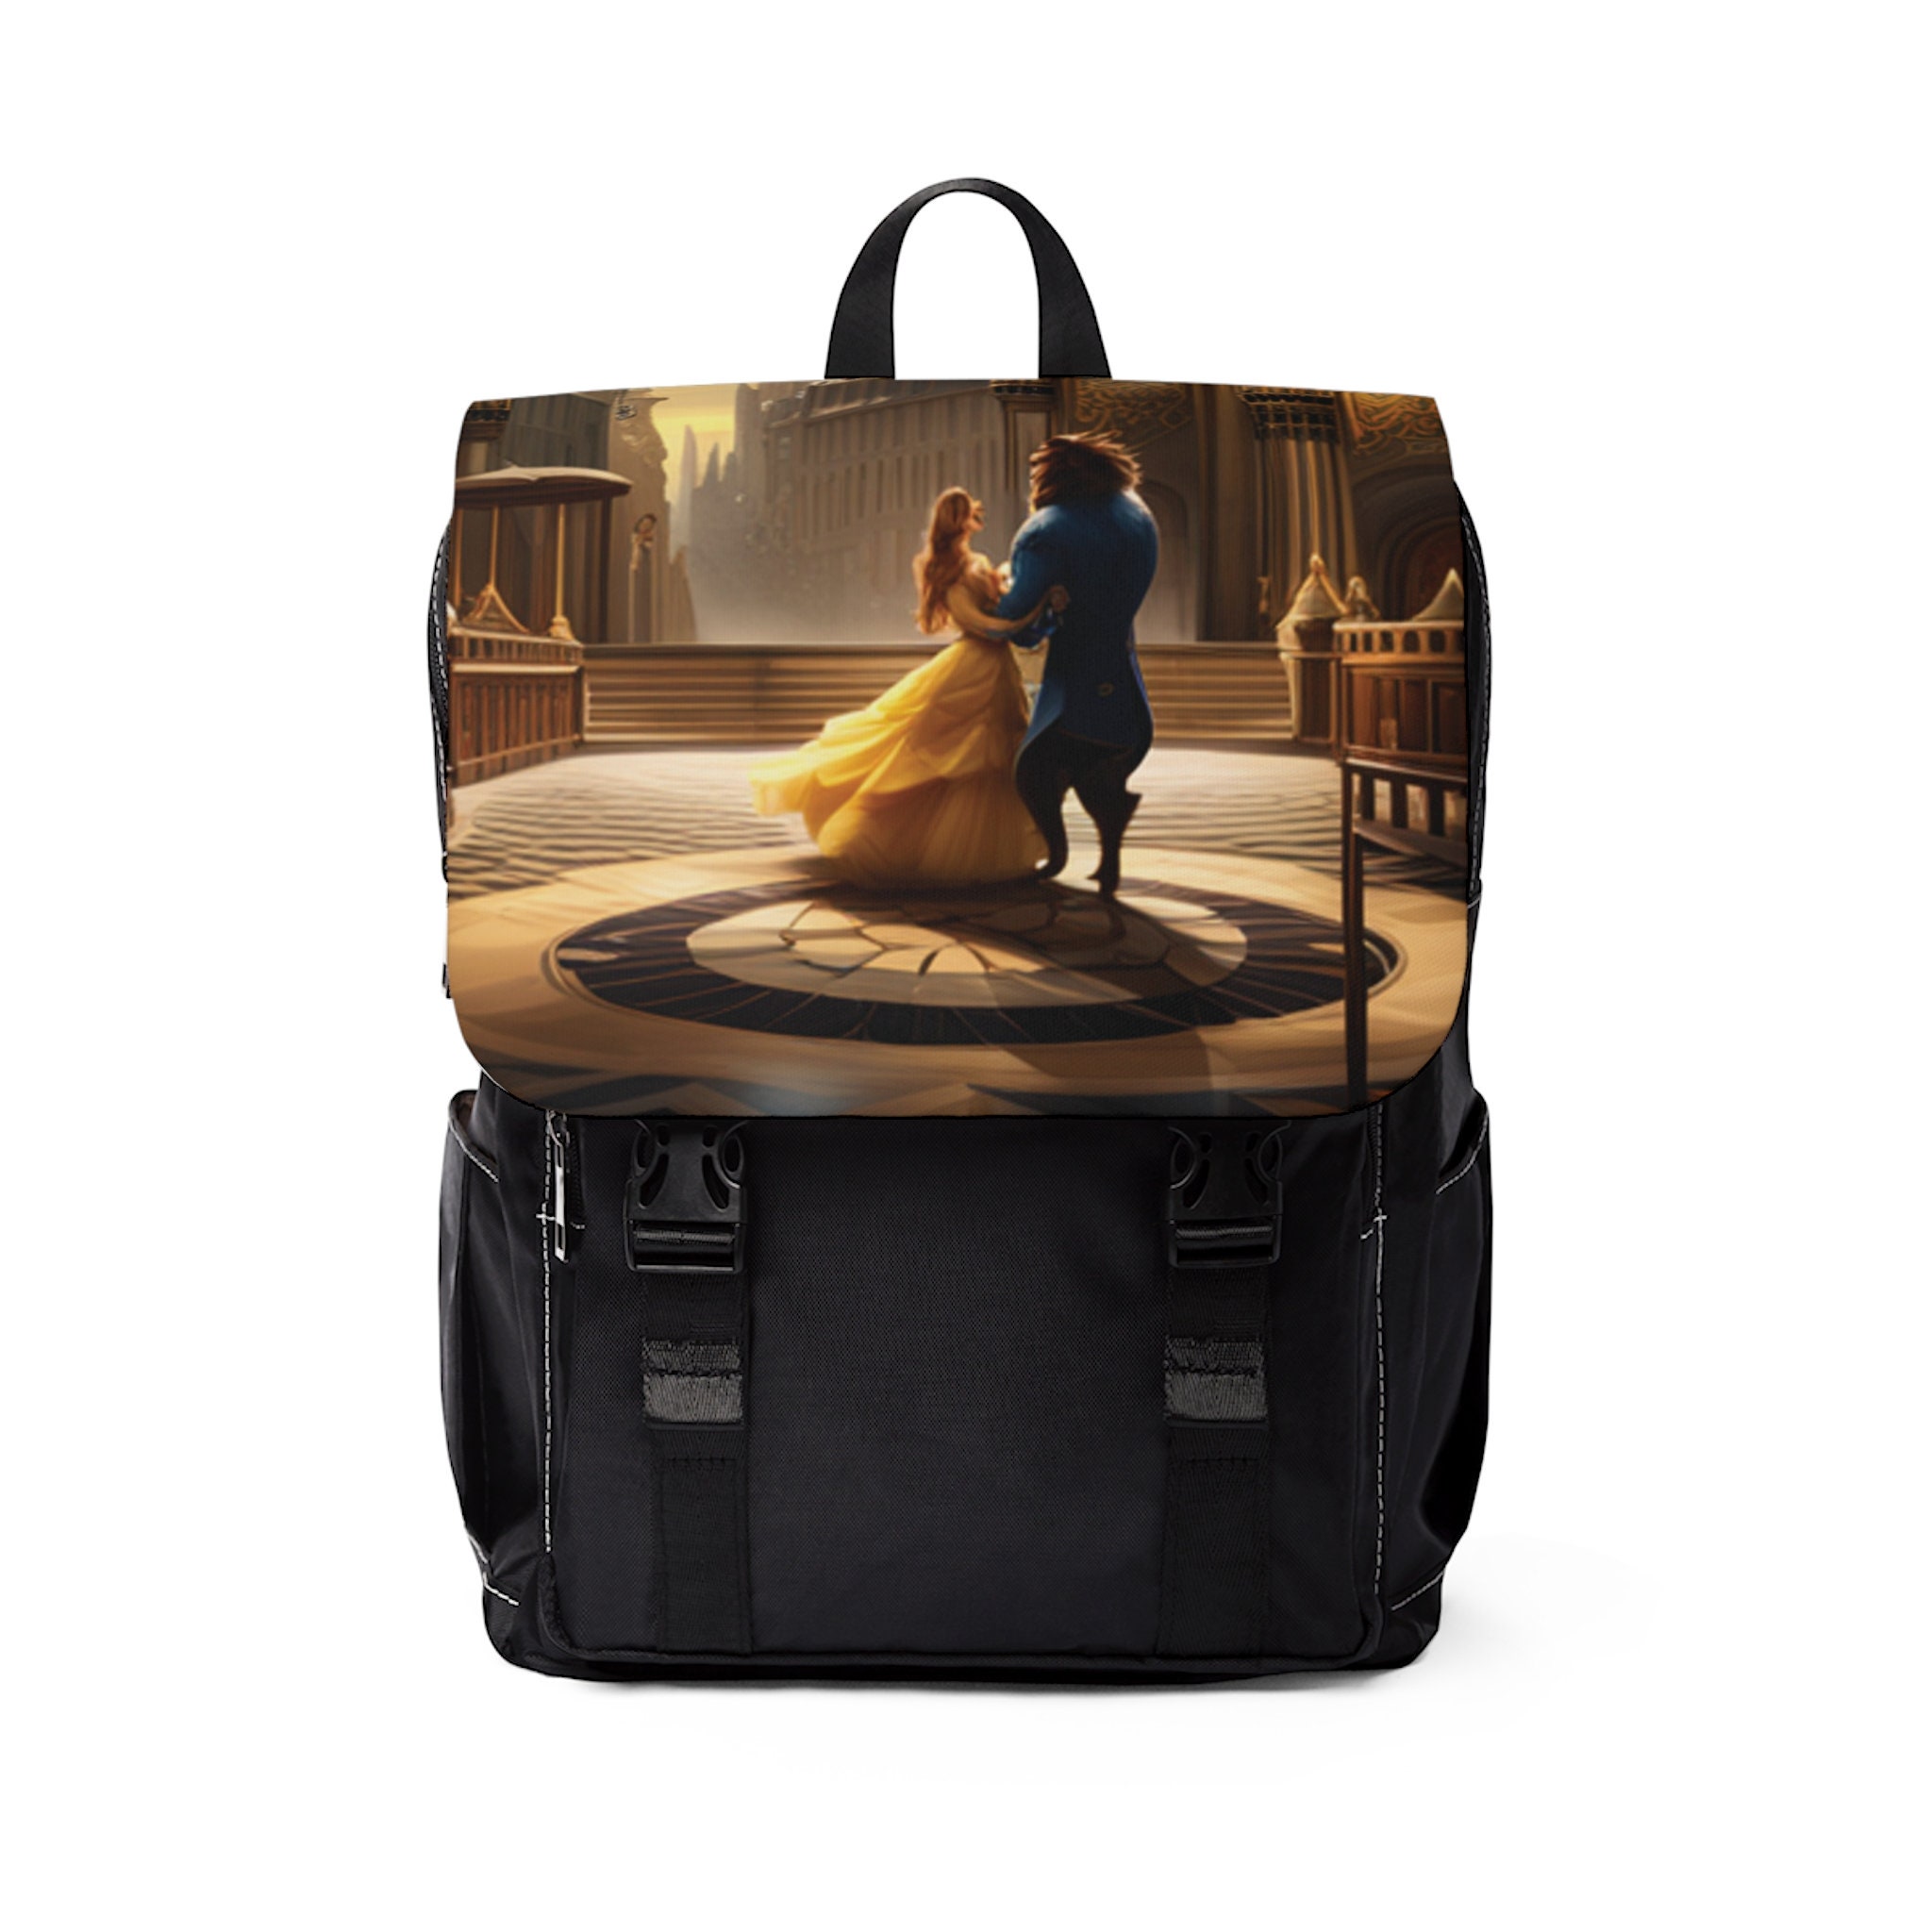 Disney Store Princess Belle Backpack Gold Book Bag 2020